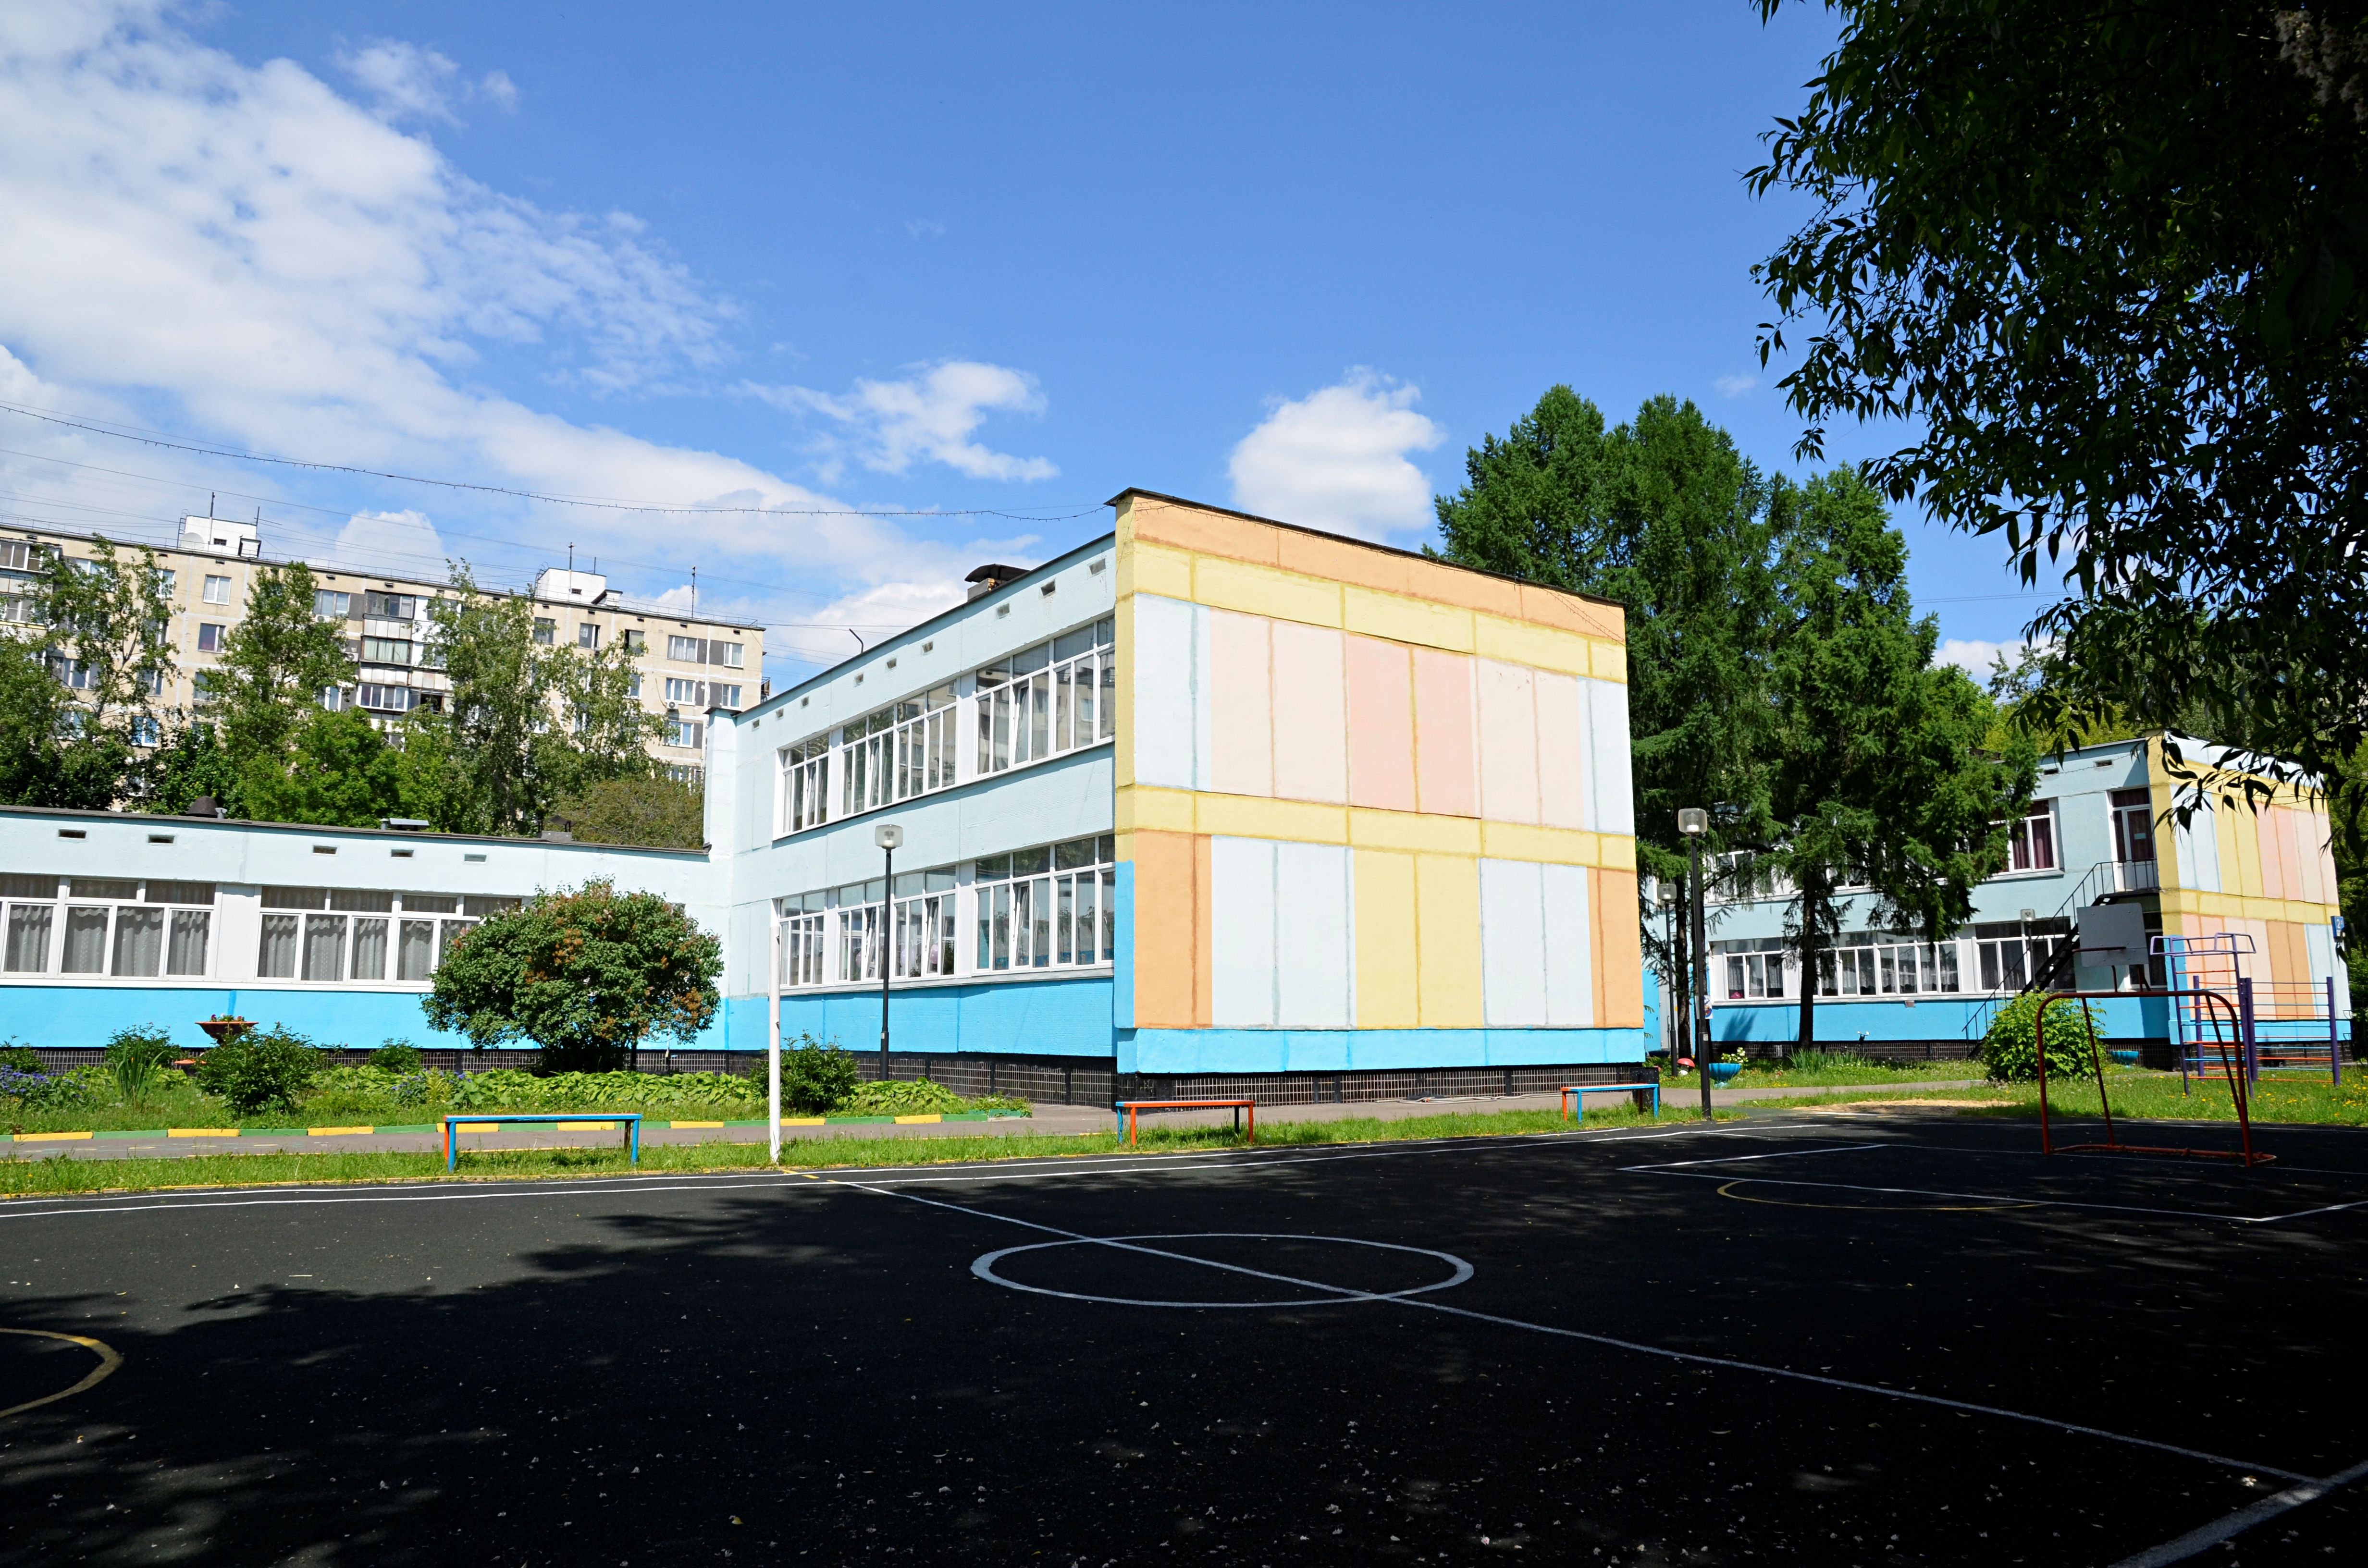 Около 40 образовательных объектов в Новой Москве возведут девелоперы